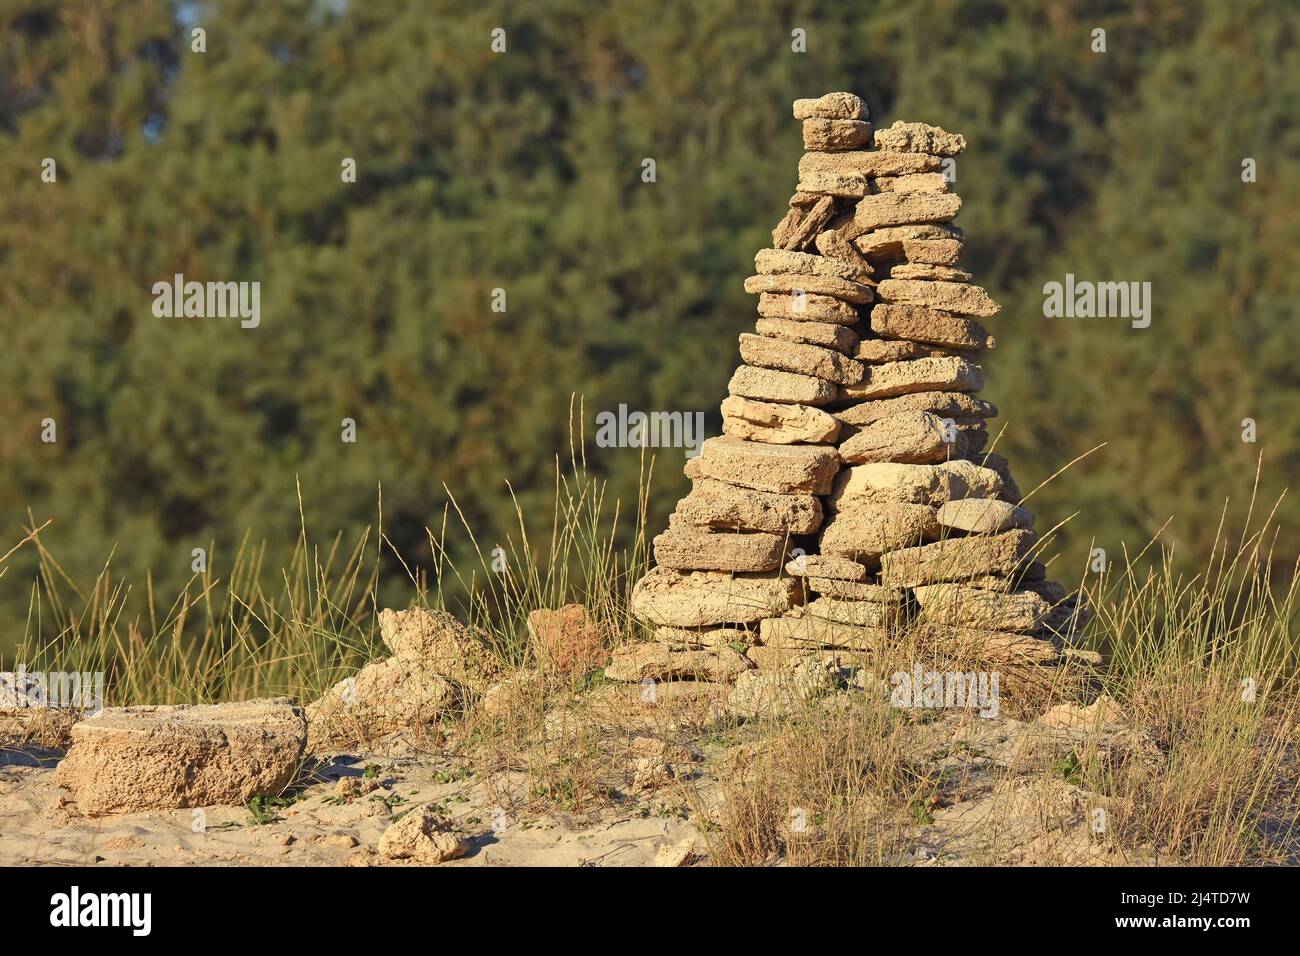 cairn, pile ou pile de pierres faite par l'homme Banque D'Images